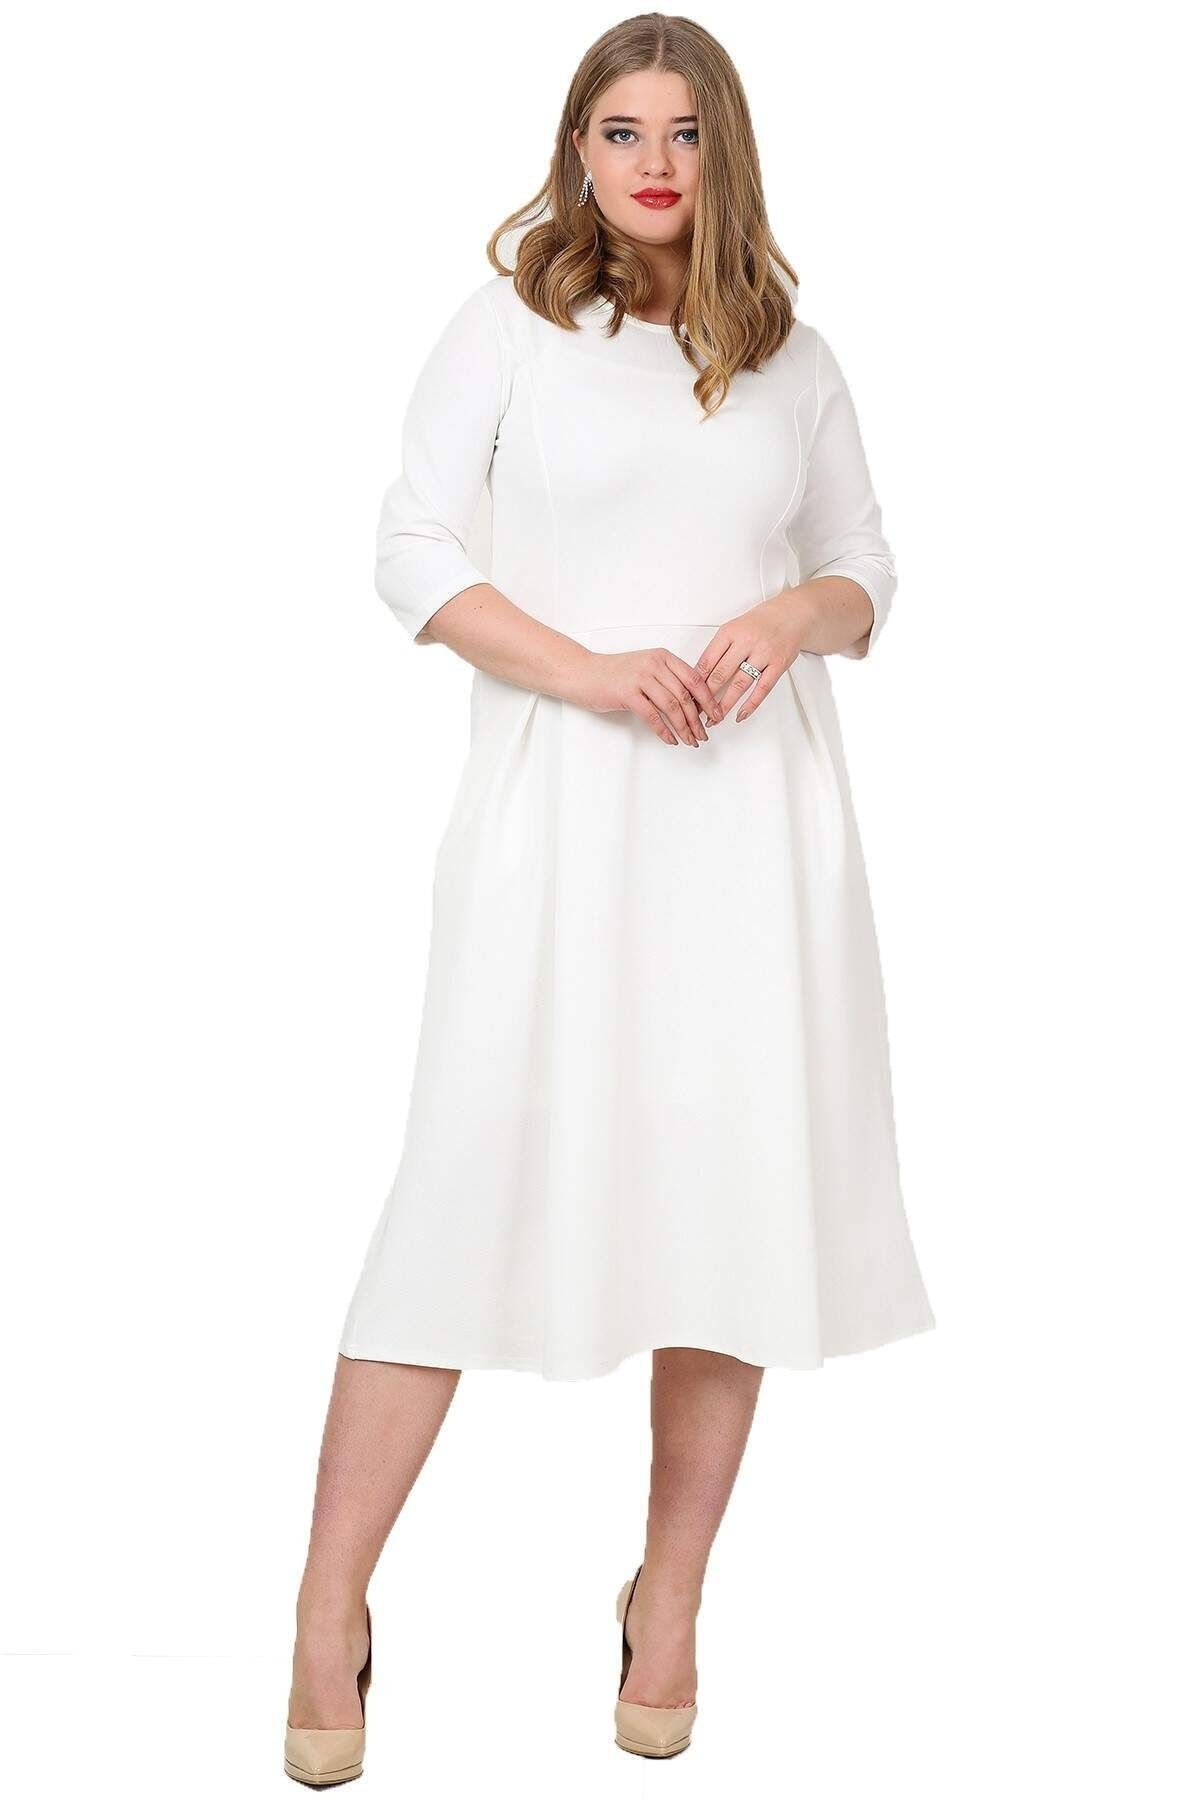 Angelino Kadın Beyaz Cepli Elbise KL778